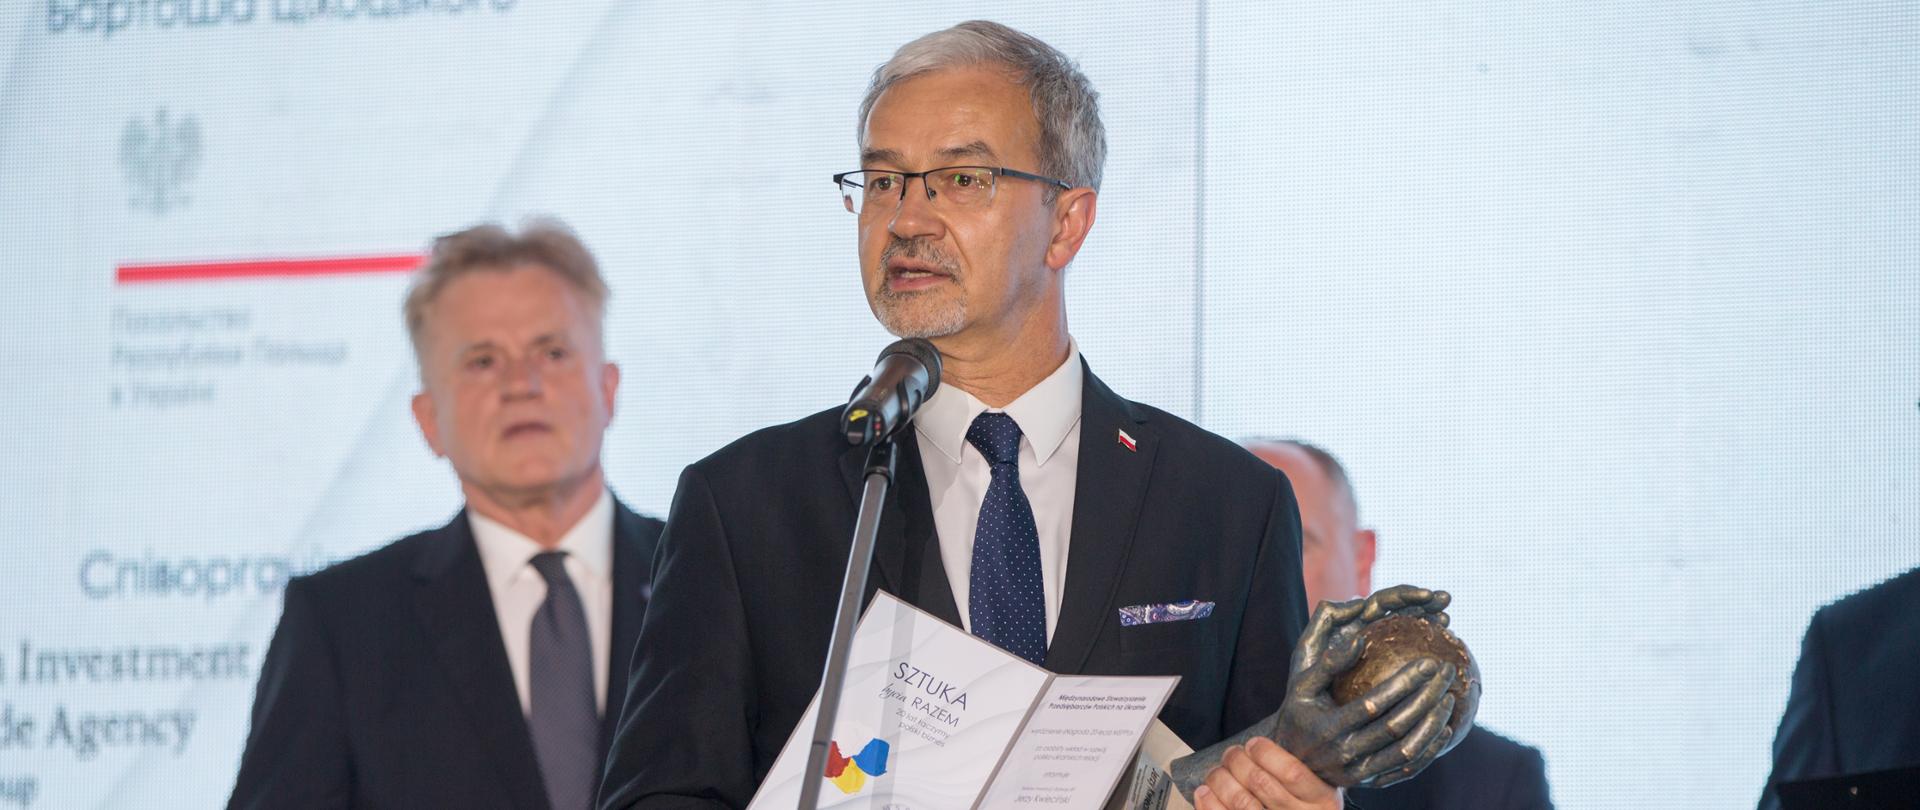 Na zdjęciu przy mikrofonie stoi minister Kwieciński, w dłoni trzyma dyplom i statuetkę 